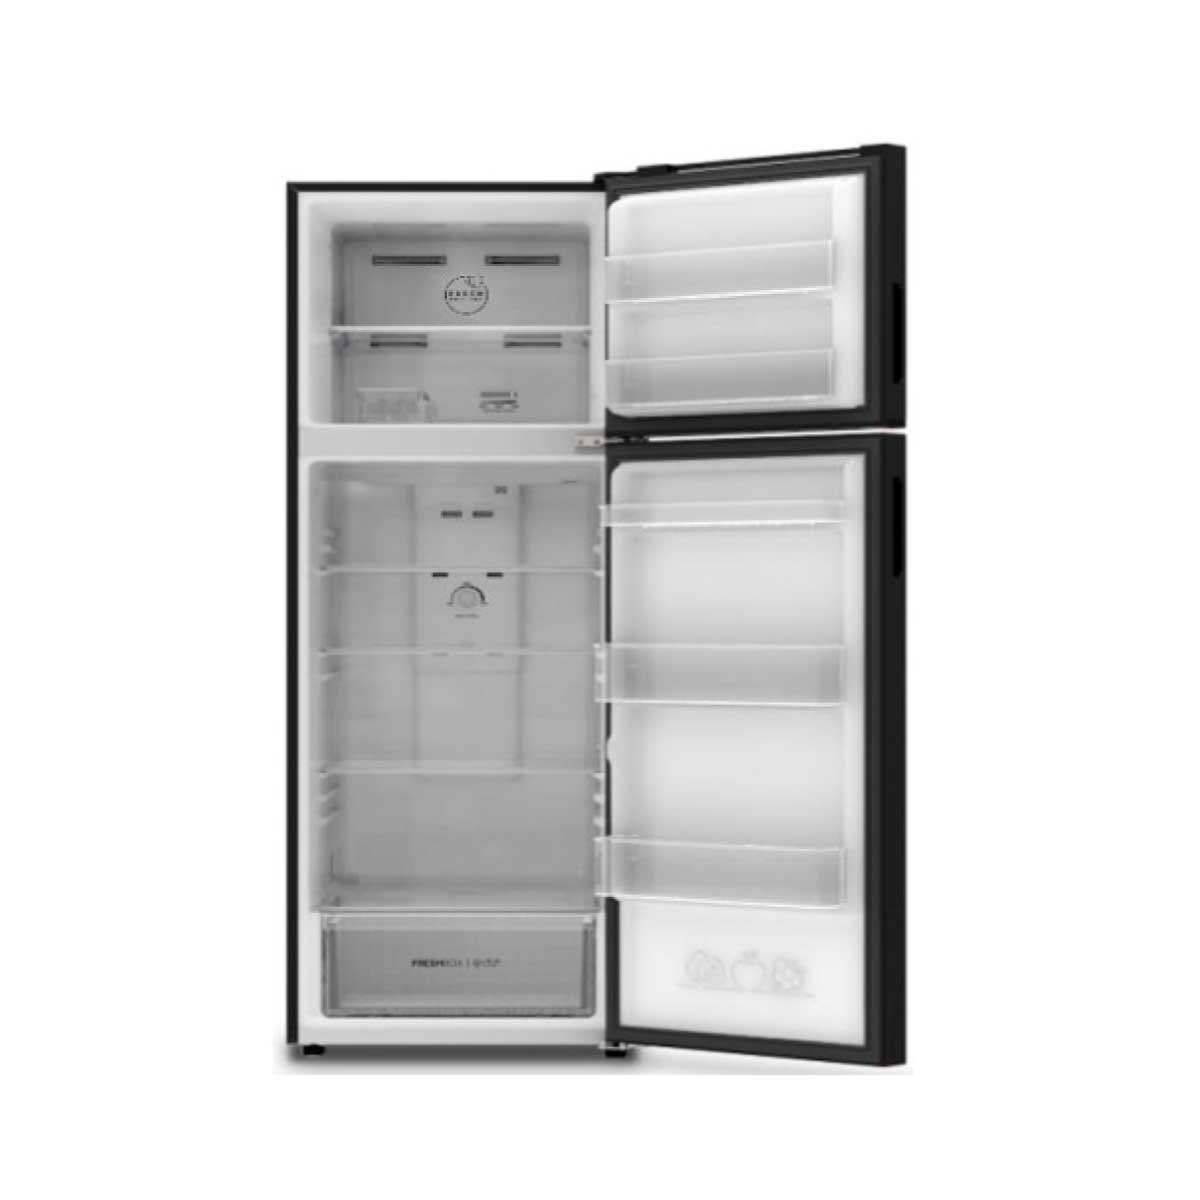 ตู้เย็น HAIER  2 ประตู 11.8Q Twin INV สีดำ รุ่น HRF-320MNI โดย สยามทีวี by Siam T.V.